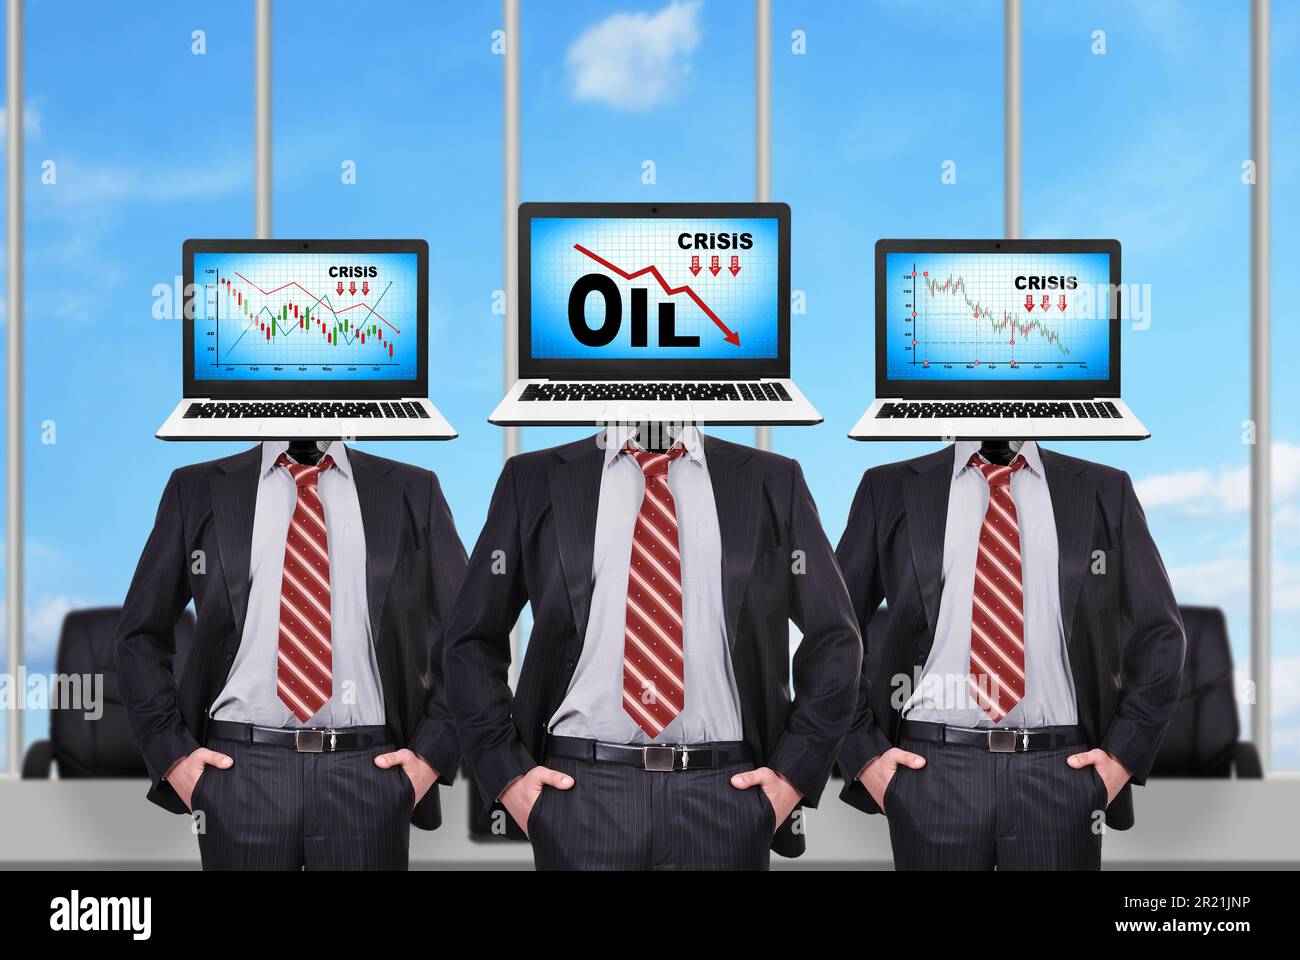 Drei Geschäftsleute mit einem Laptop anstelle eines Kopfes. Ölkrisentabelle auf dem Bildschirm Stockfoto